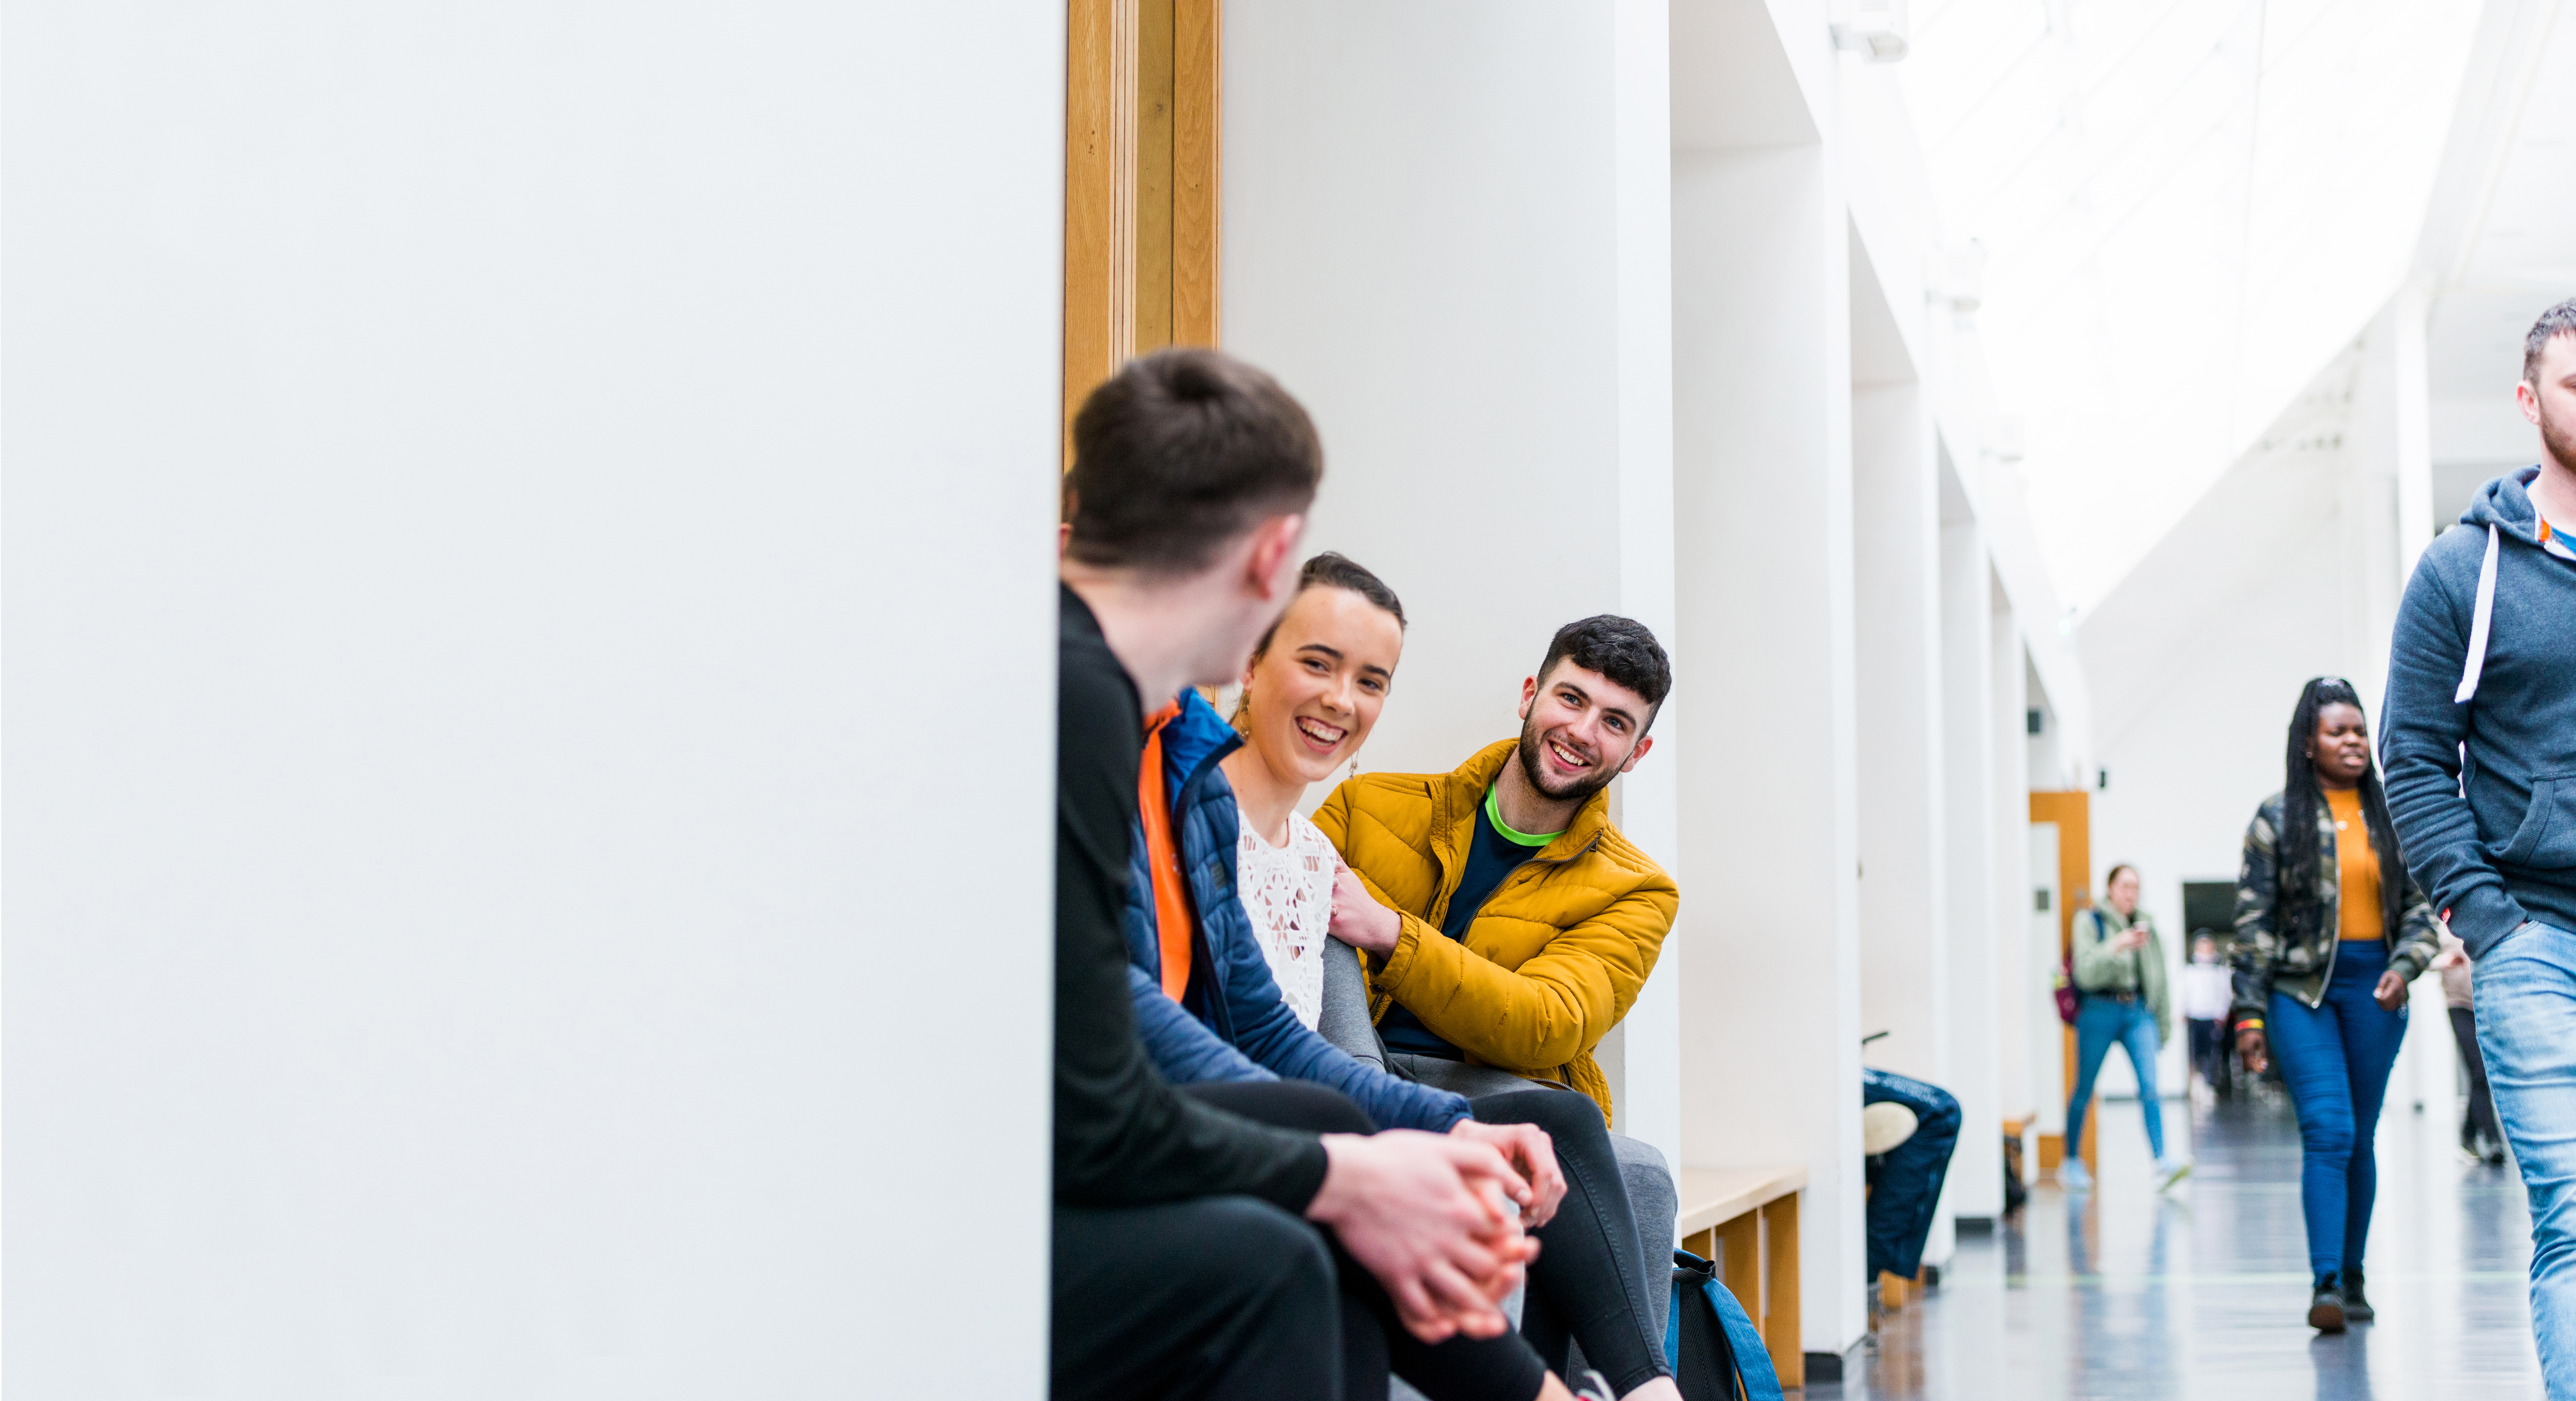 Students chat in corridor of ATU Sligo campus